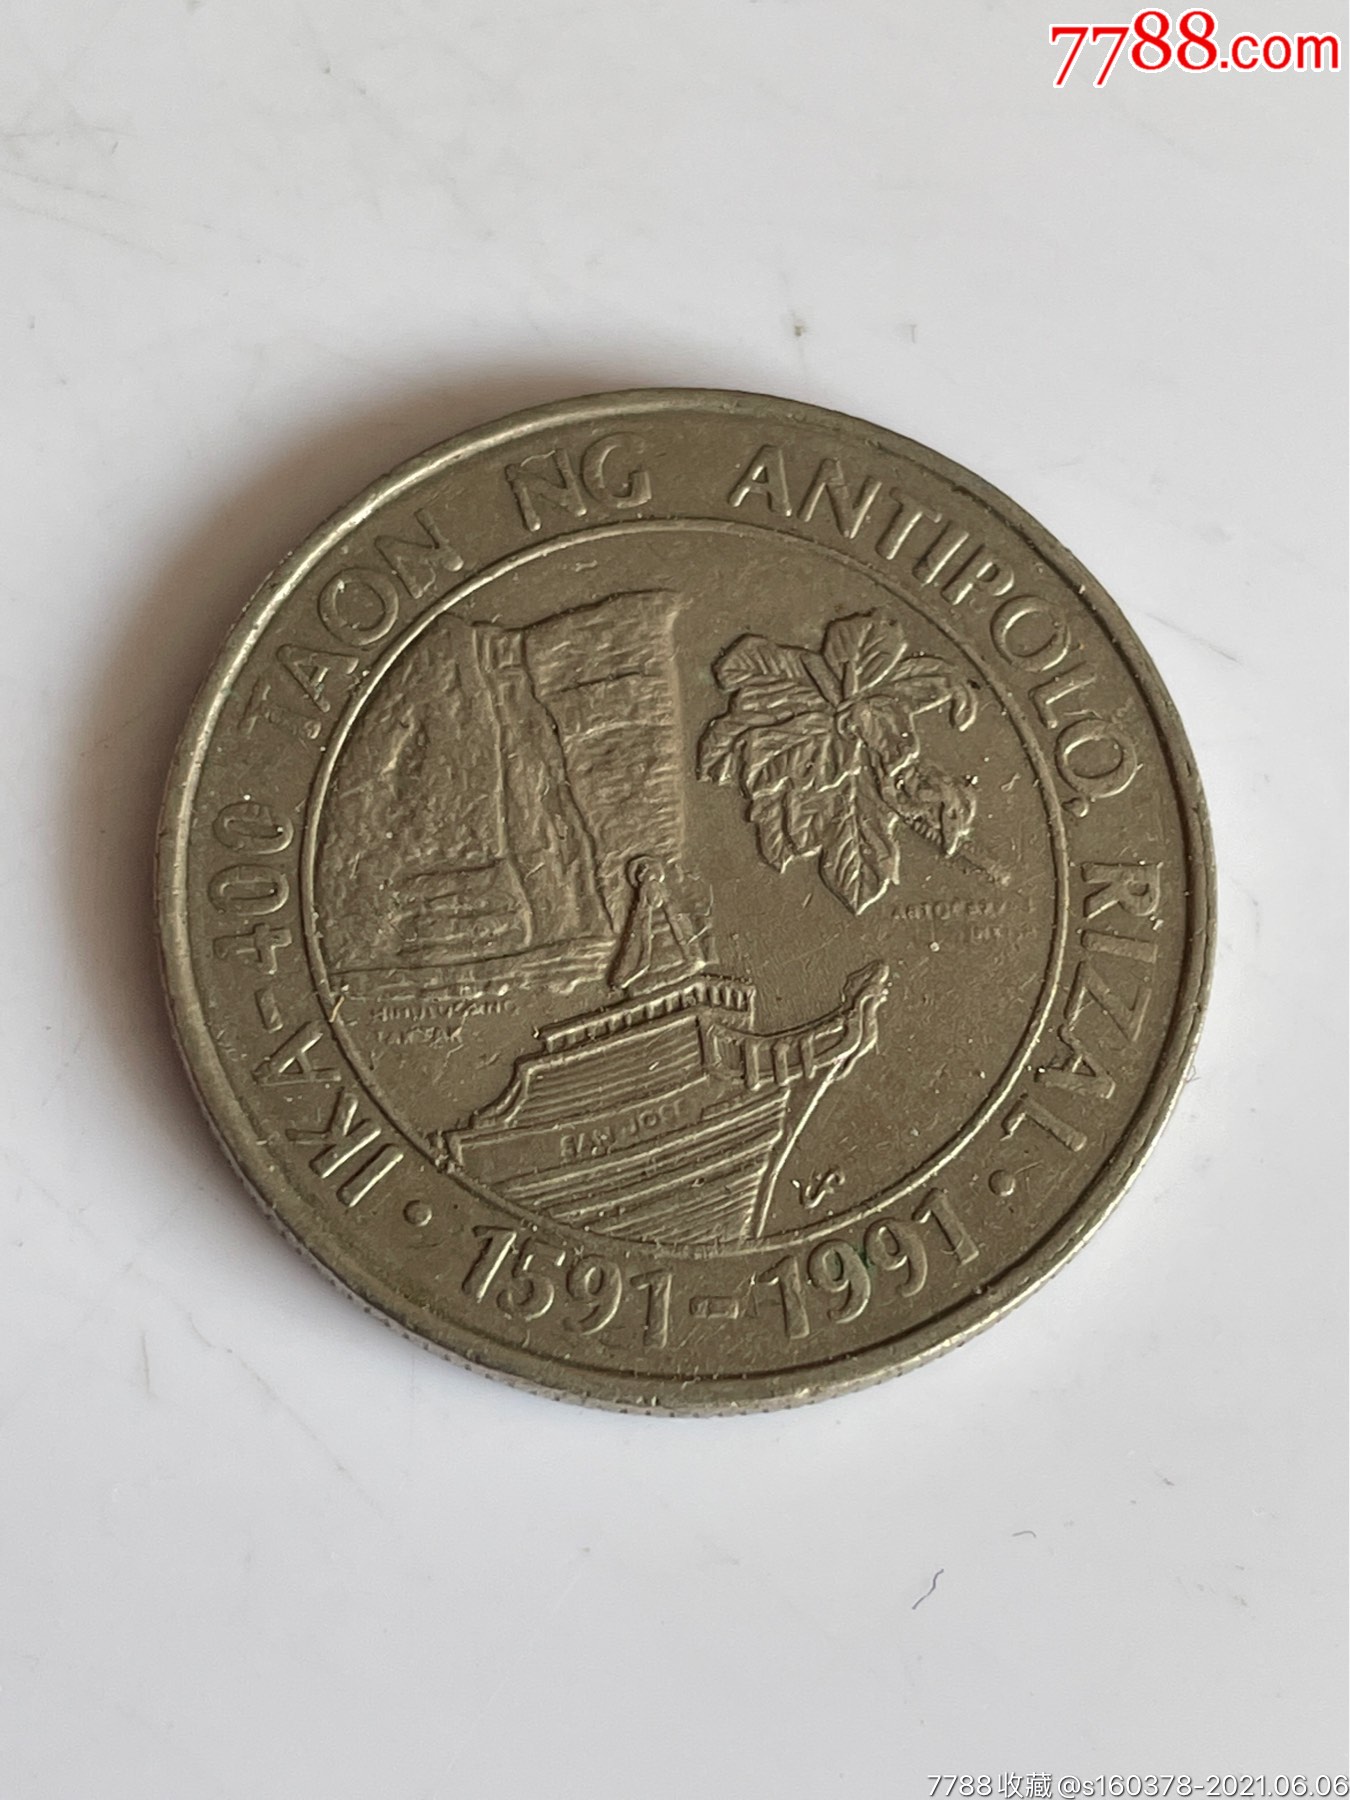 菲律宾1991年1比索纪念币外国硬币